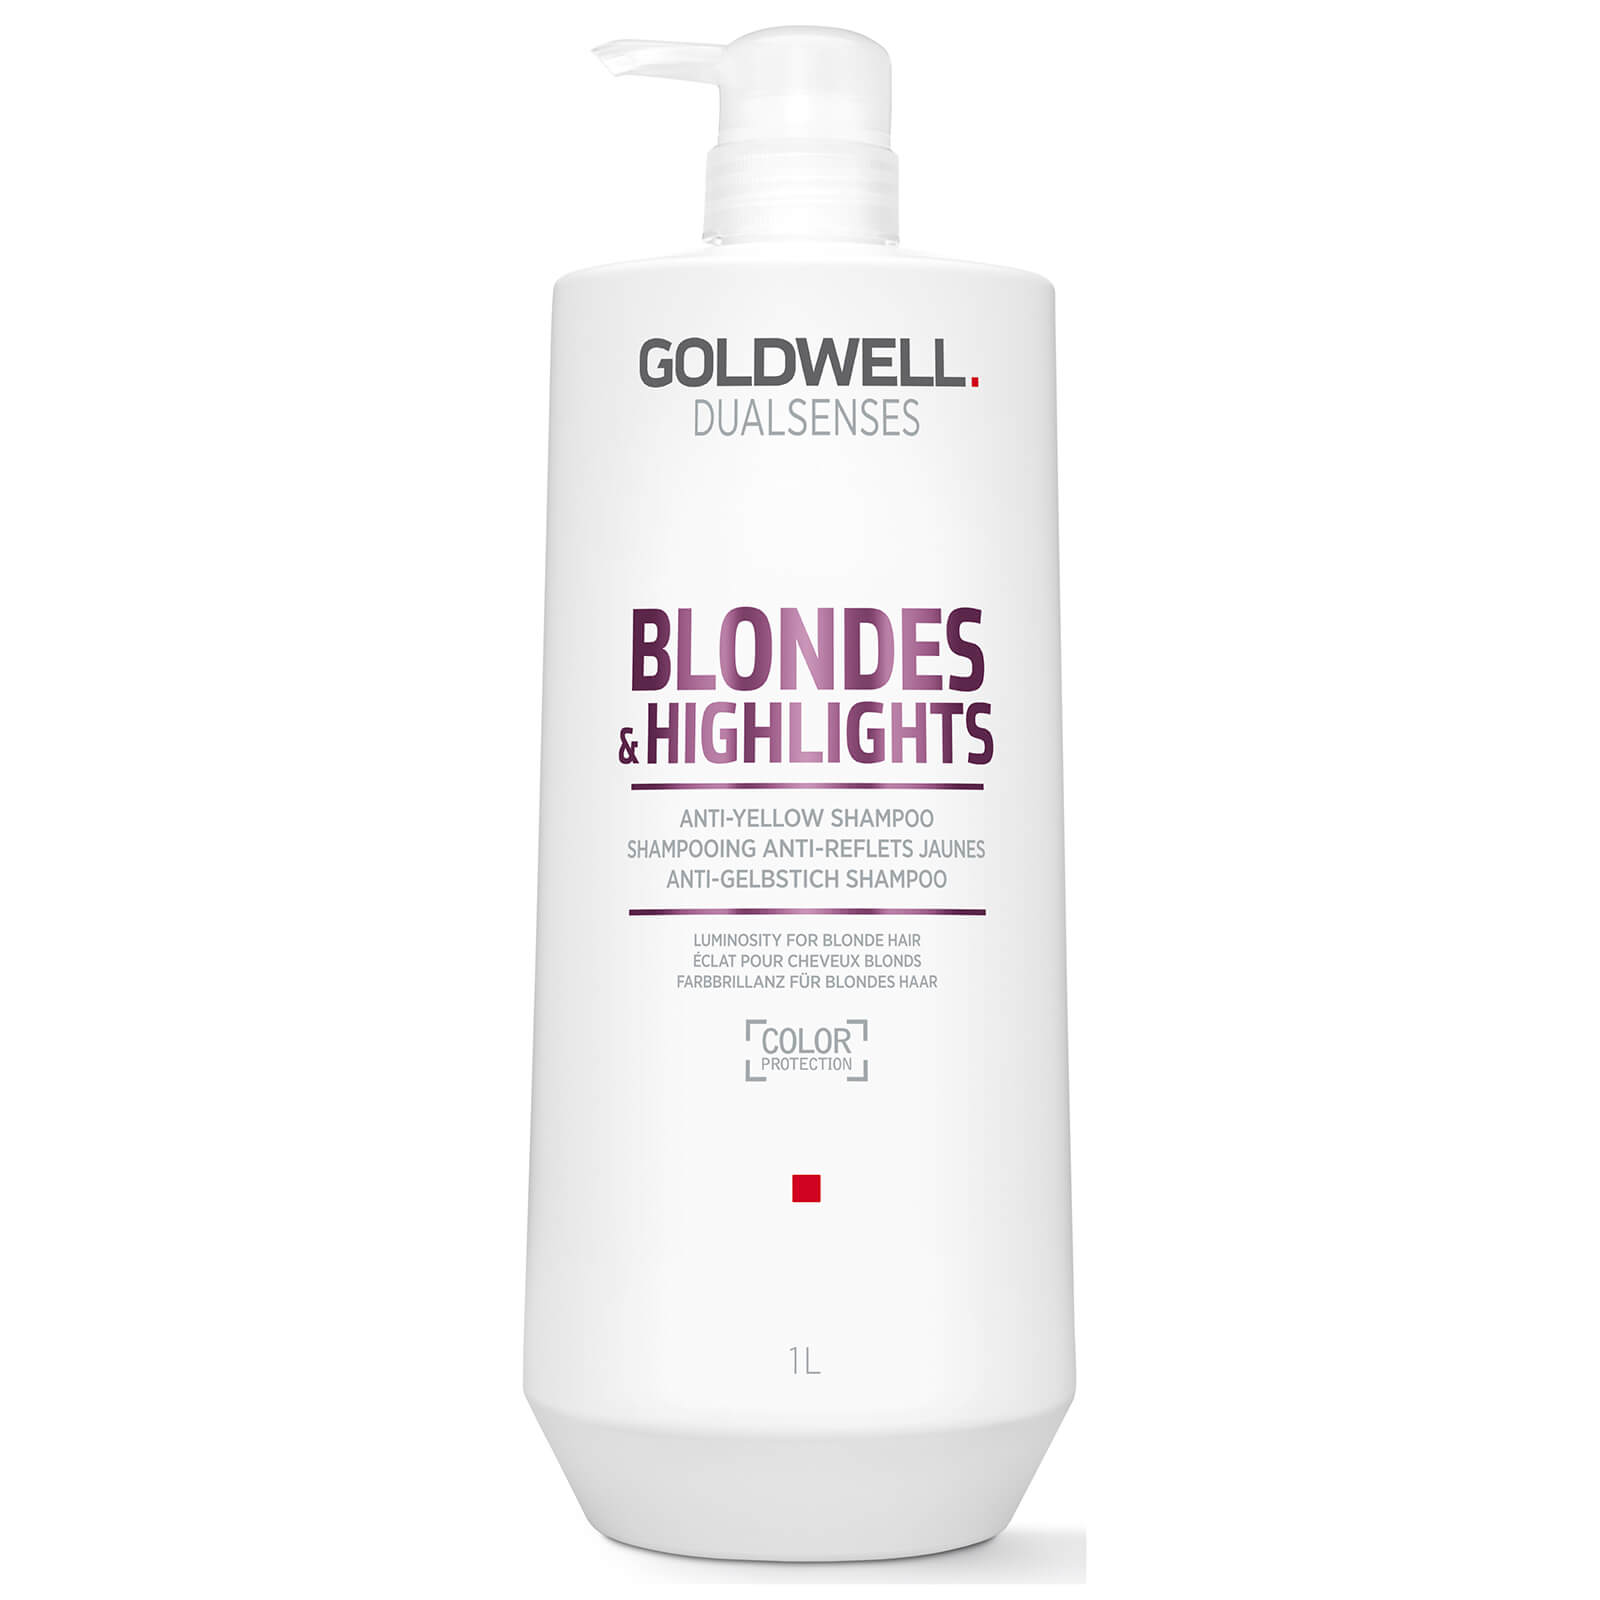 Шампунь против желтизны для осветленных волос Goldwell DS BL&HL 1000 мл goldwell гель для укладки волос dualsenses men styling power gel